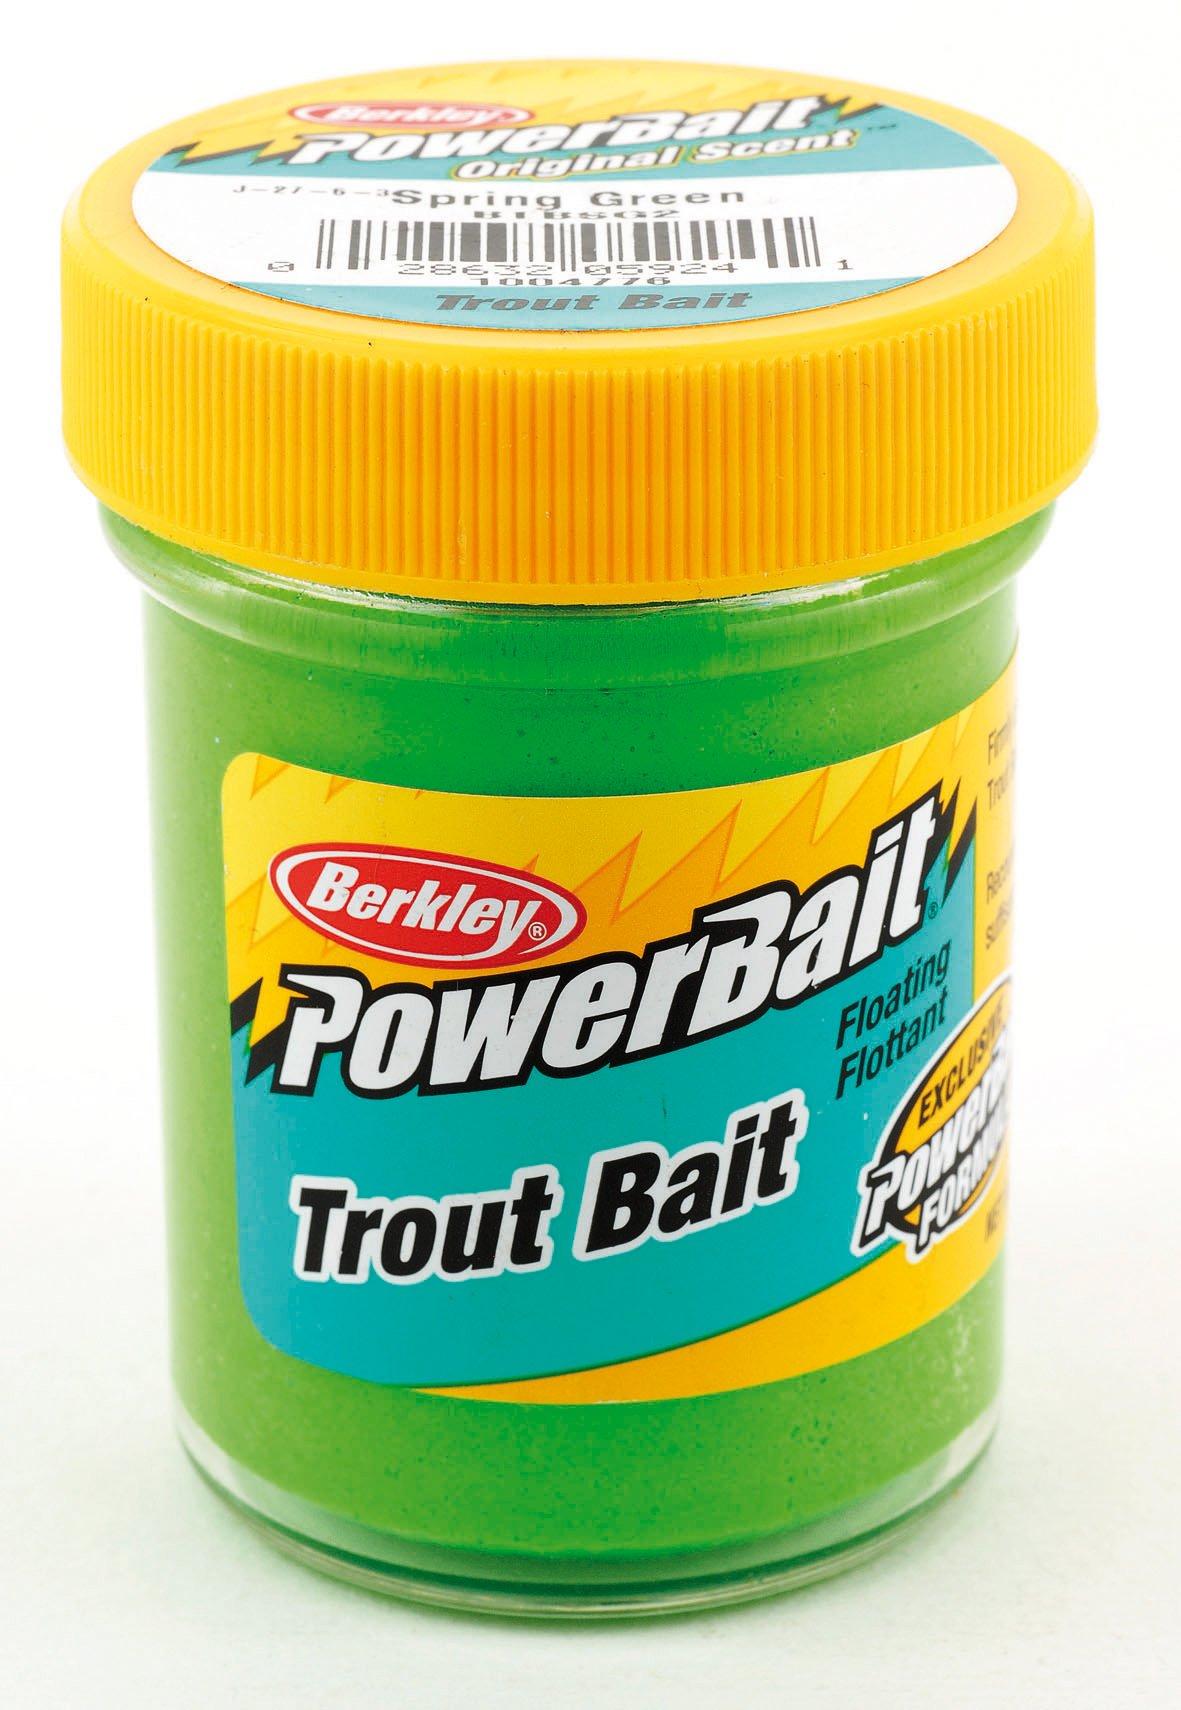  Berkley PowerBait Trout Dough Bait, Tequila Lime, 1.8